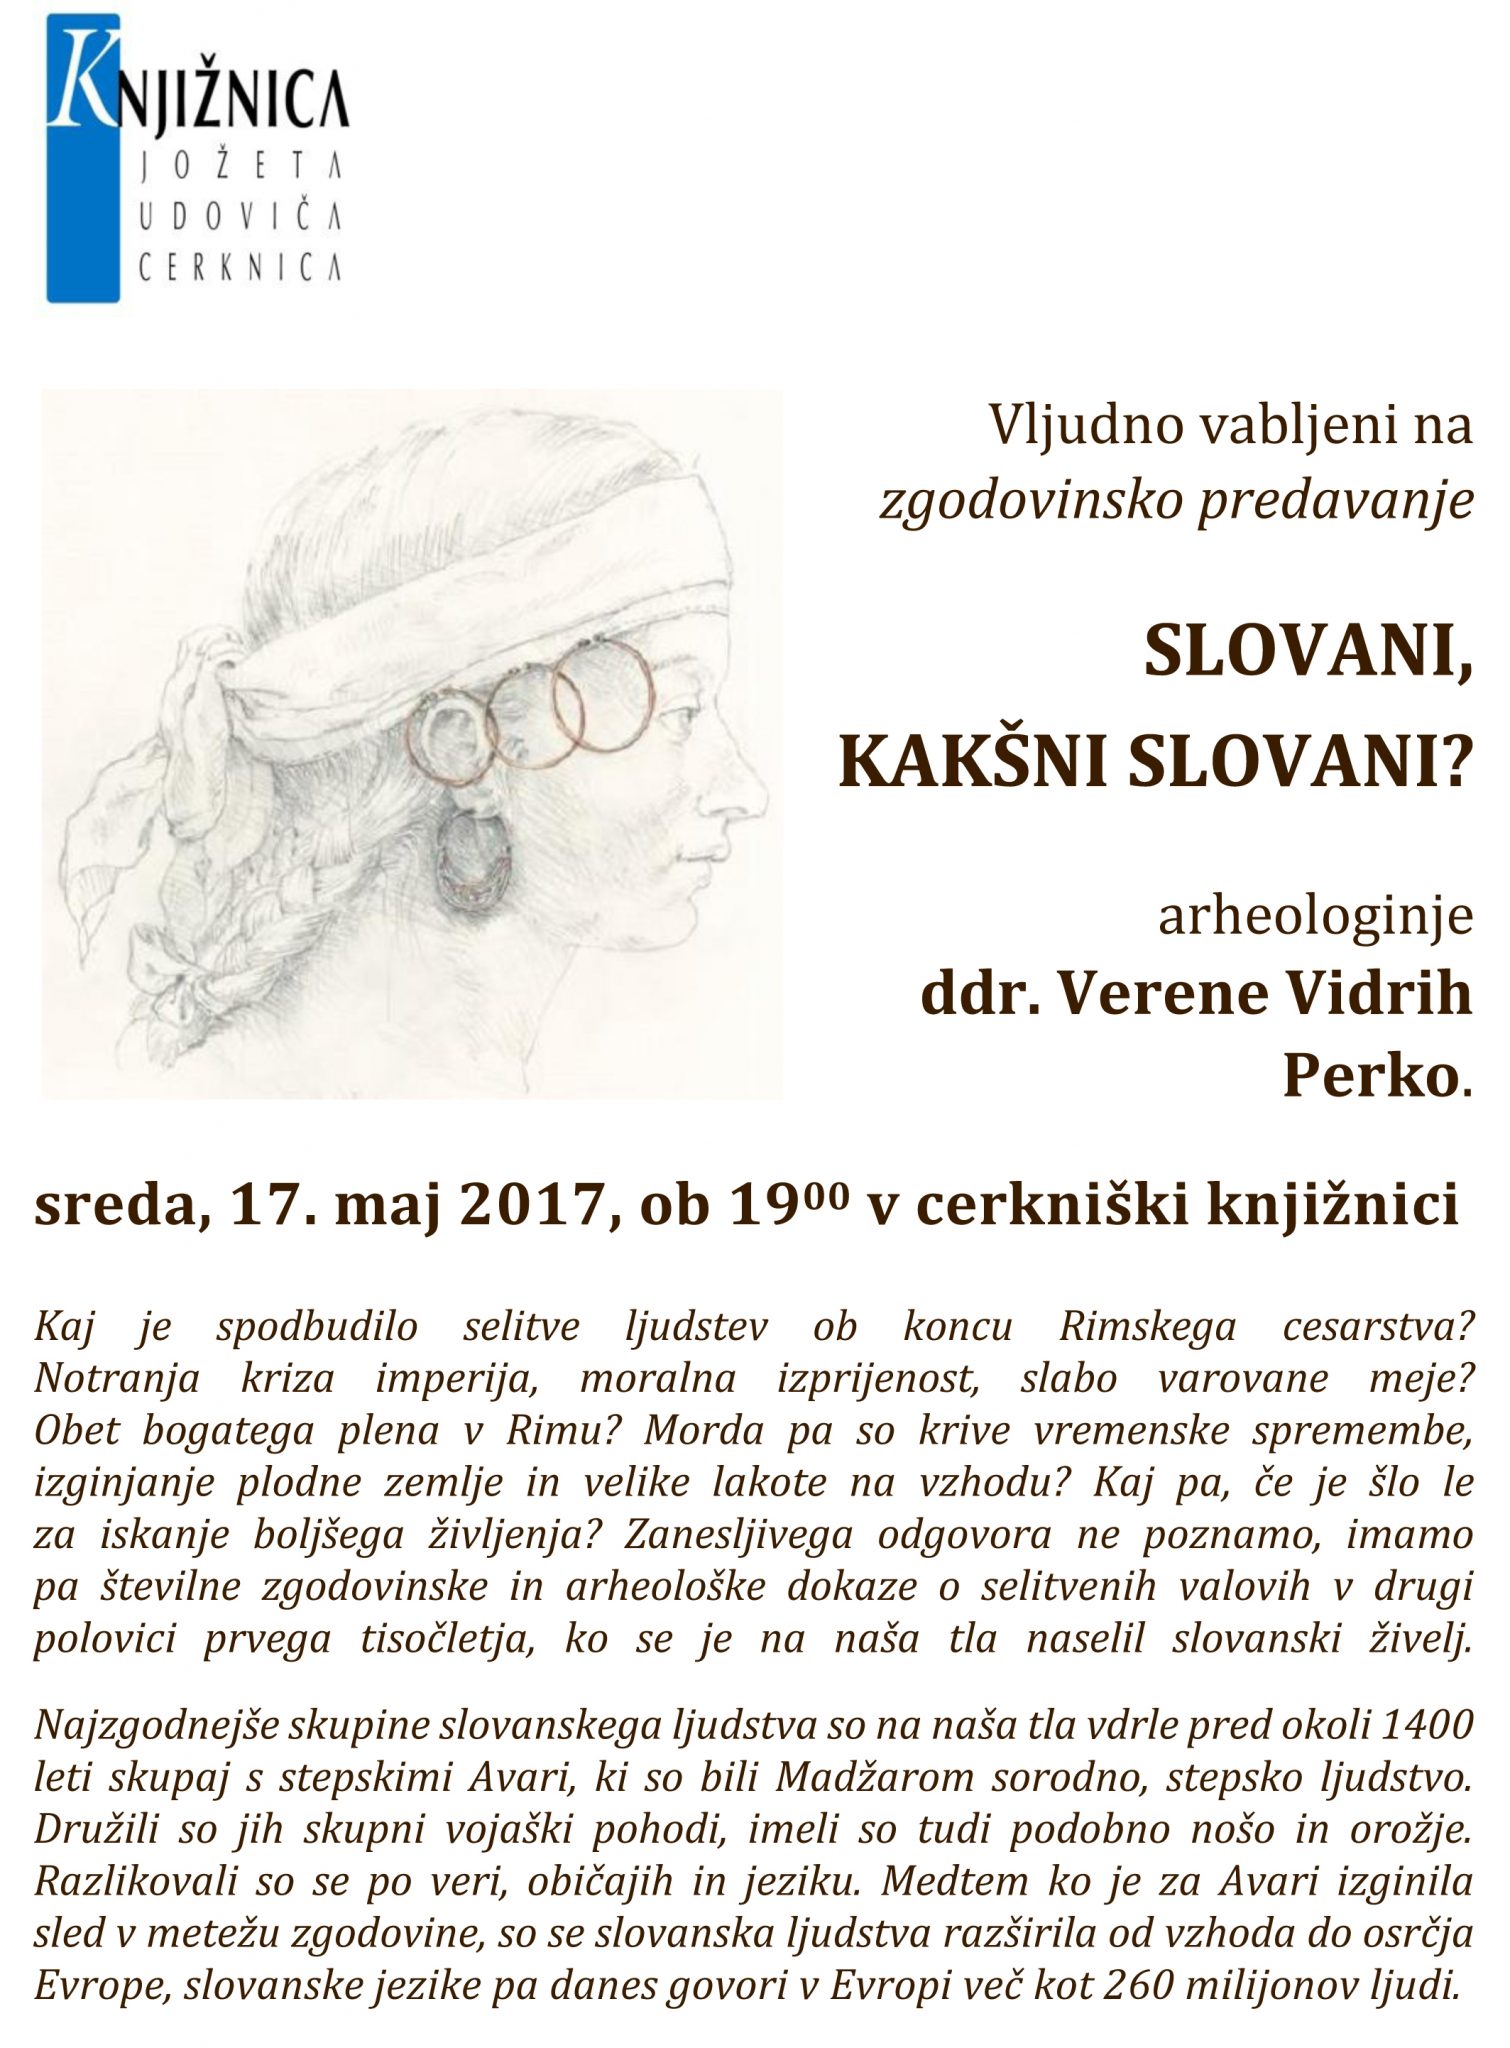 vabilo maj 2017 - Verena Vidrih Perko: Slovani, kakšni Slovani?